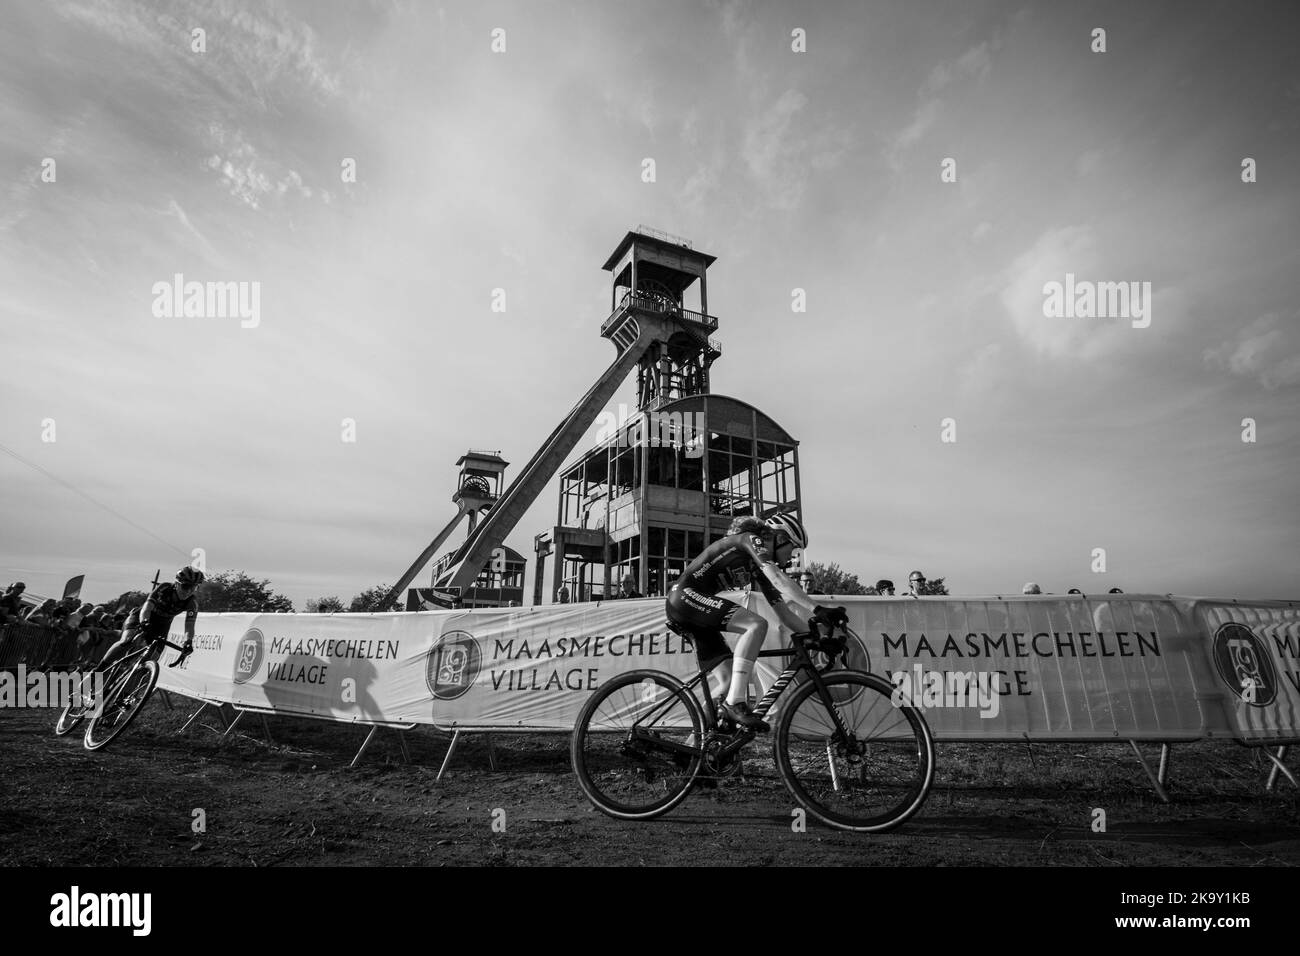 Illustration prise lors de la course d'élite féminine à la coupe du monde du cyclisme de cyclocross à Maasmechelen, Belgique, phase 4 (sur 14) de la coupe du monde de l'UCI, dimanche 30 octobre 2022. BELGA PHOTO DAVID PINTENS Banque D'Images